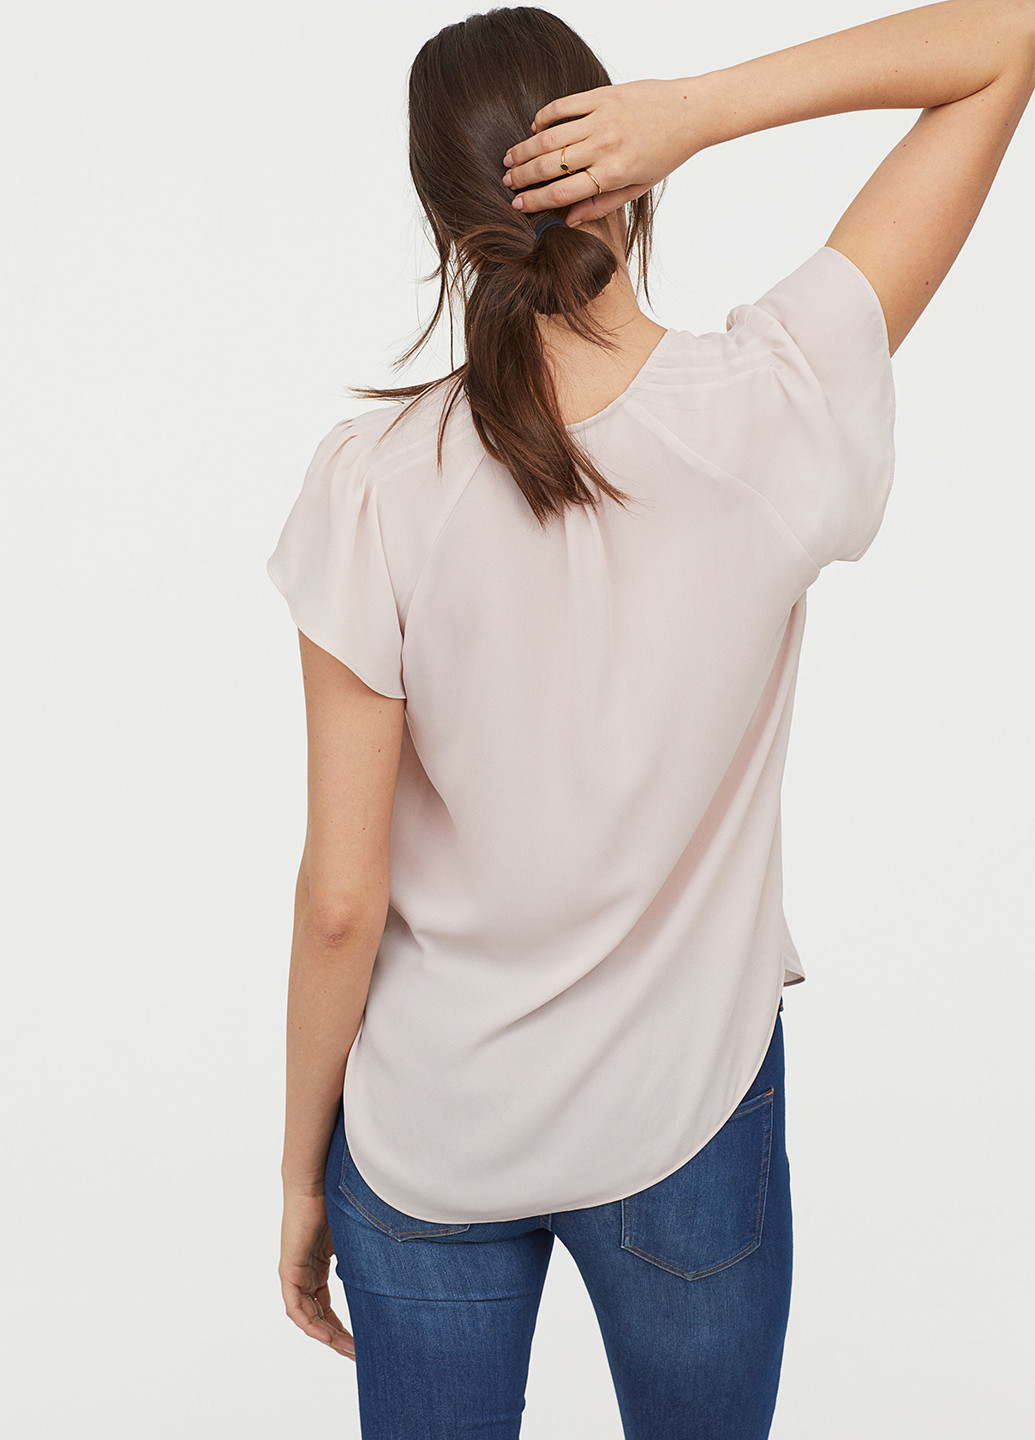 Бледно-розовая летняя блуза H&M